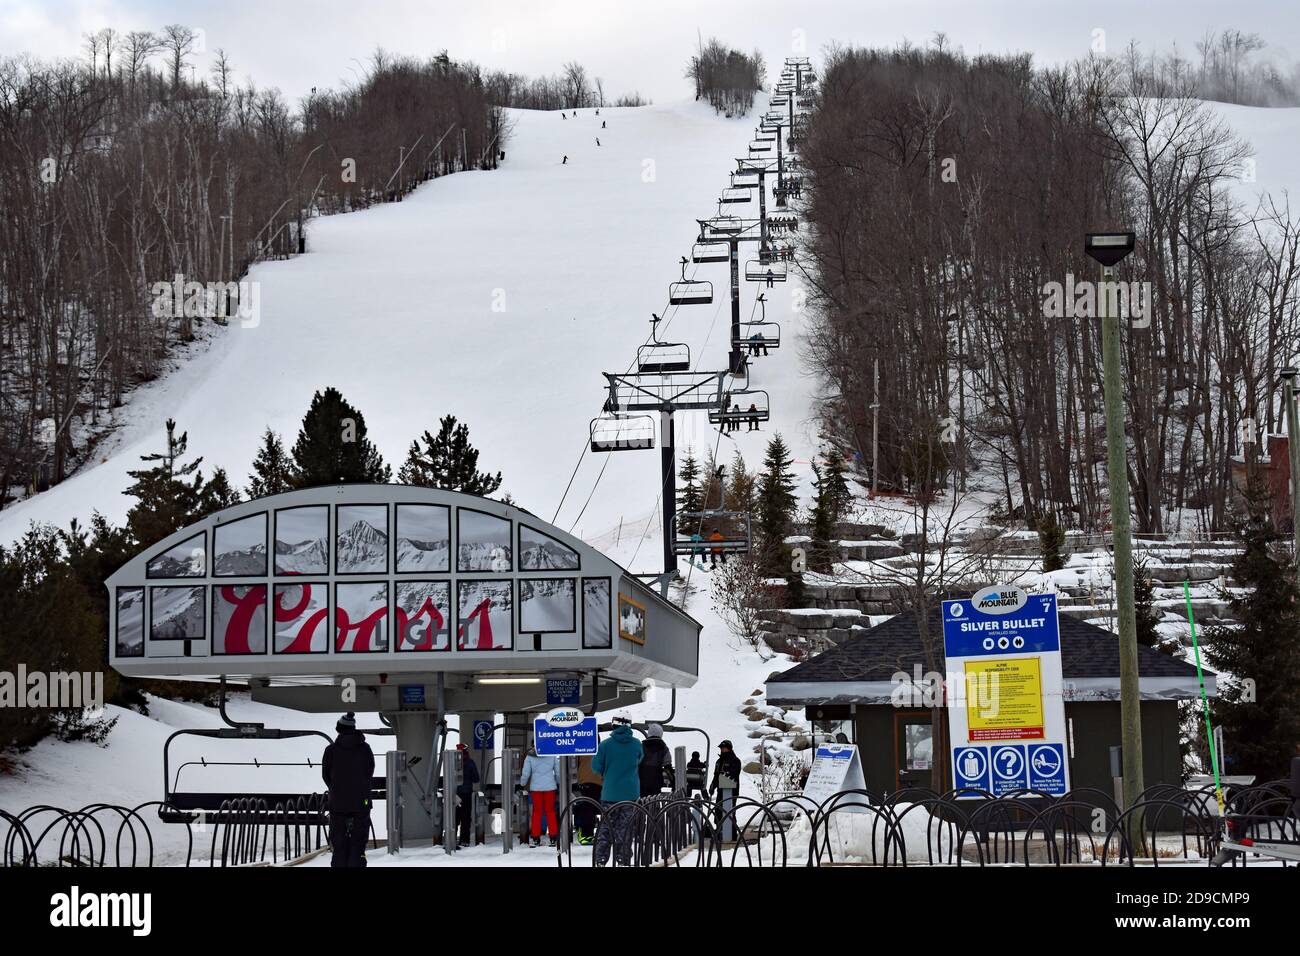 Una seggiovia per sciatori e snowboarder ha nominato Silver Bullet al Blue Mountain Resort in Ontario, Canada. La pubblicità per Coors è sulla seggiovia. Foto Stock